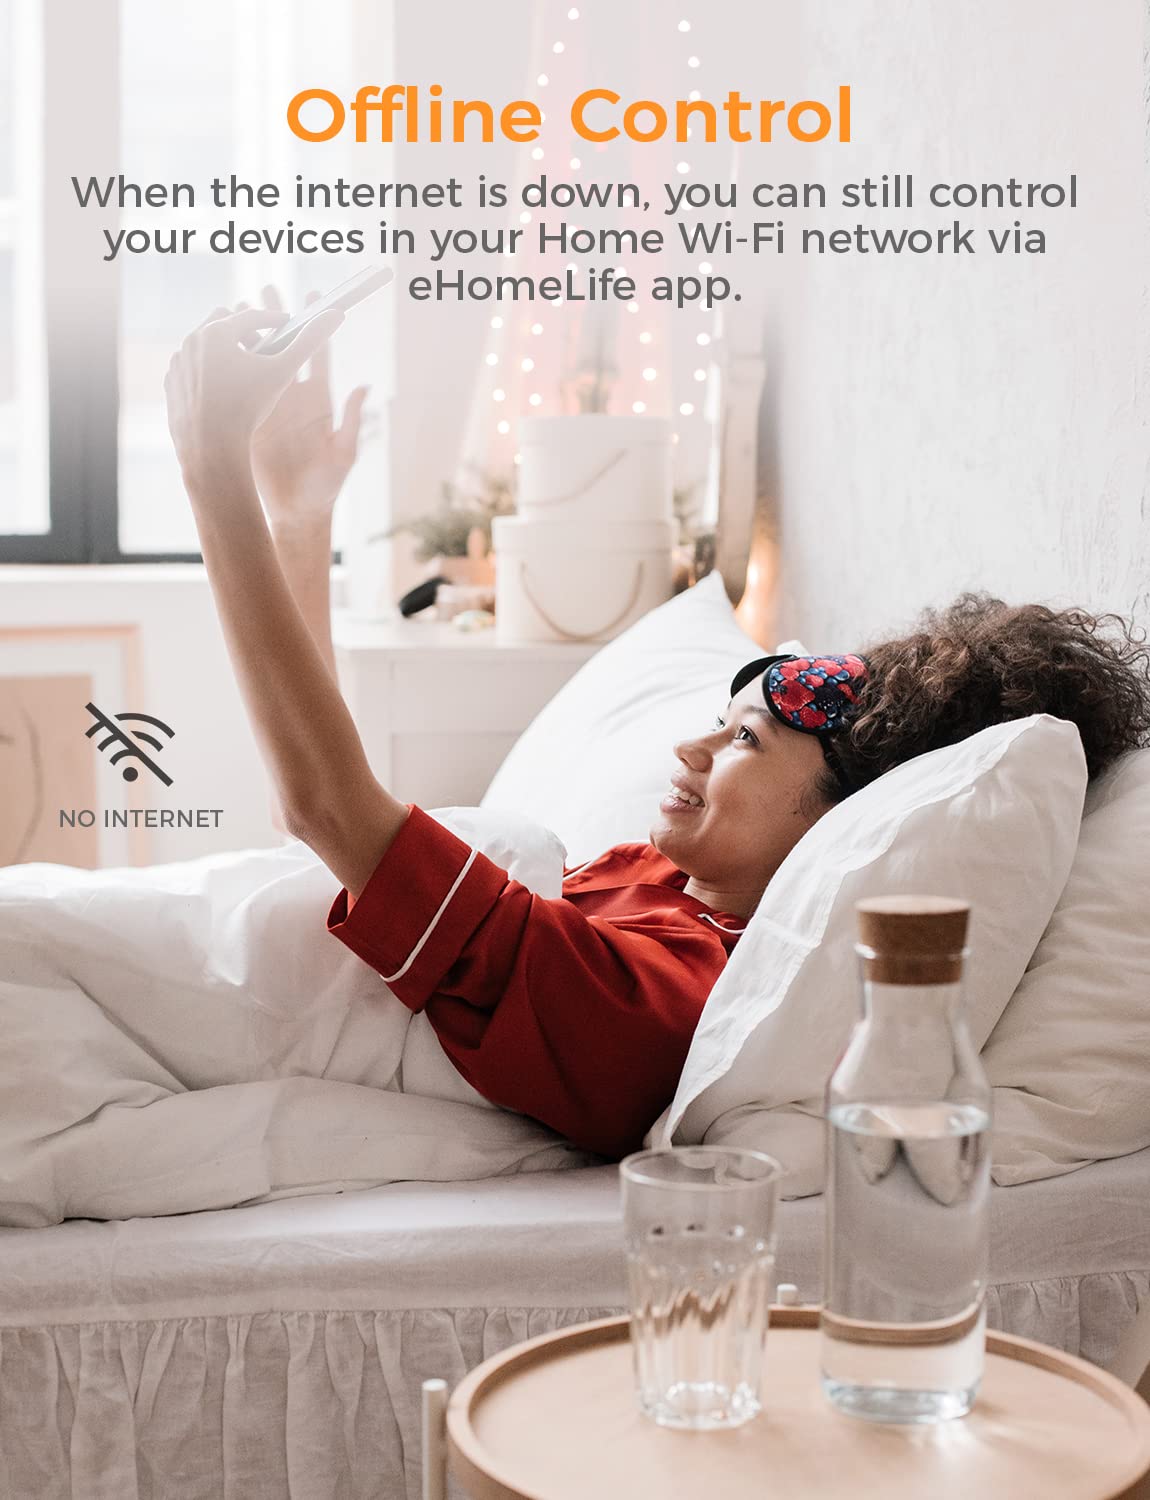 Refoss Smart Wi-Fi Plug, MSS210W (EU Version)